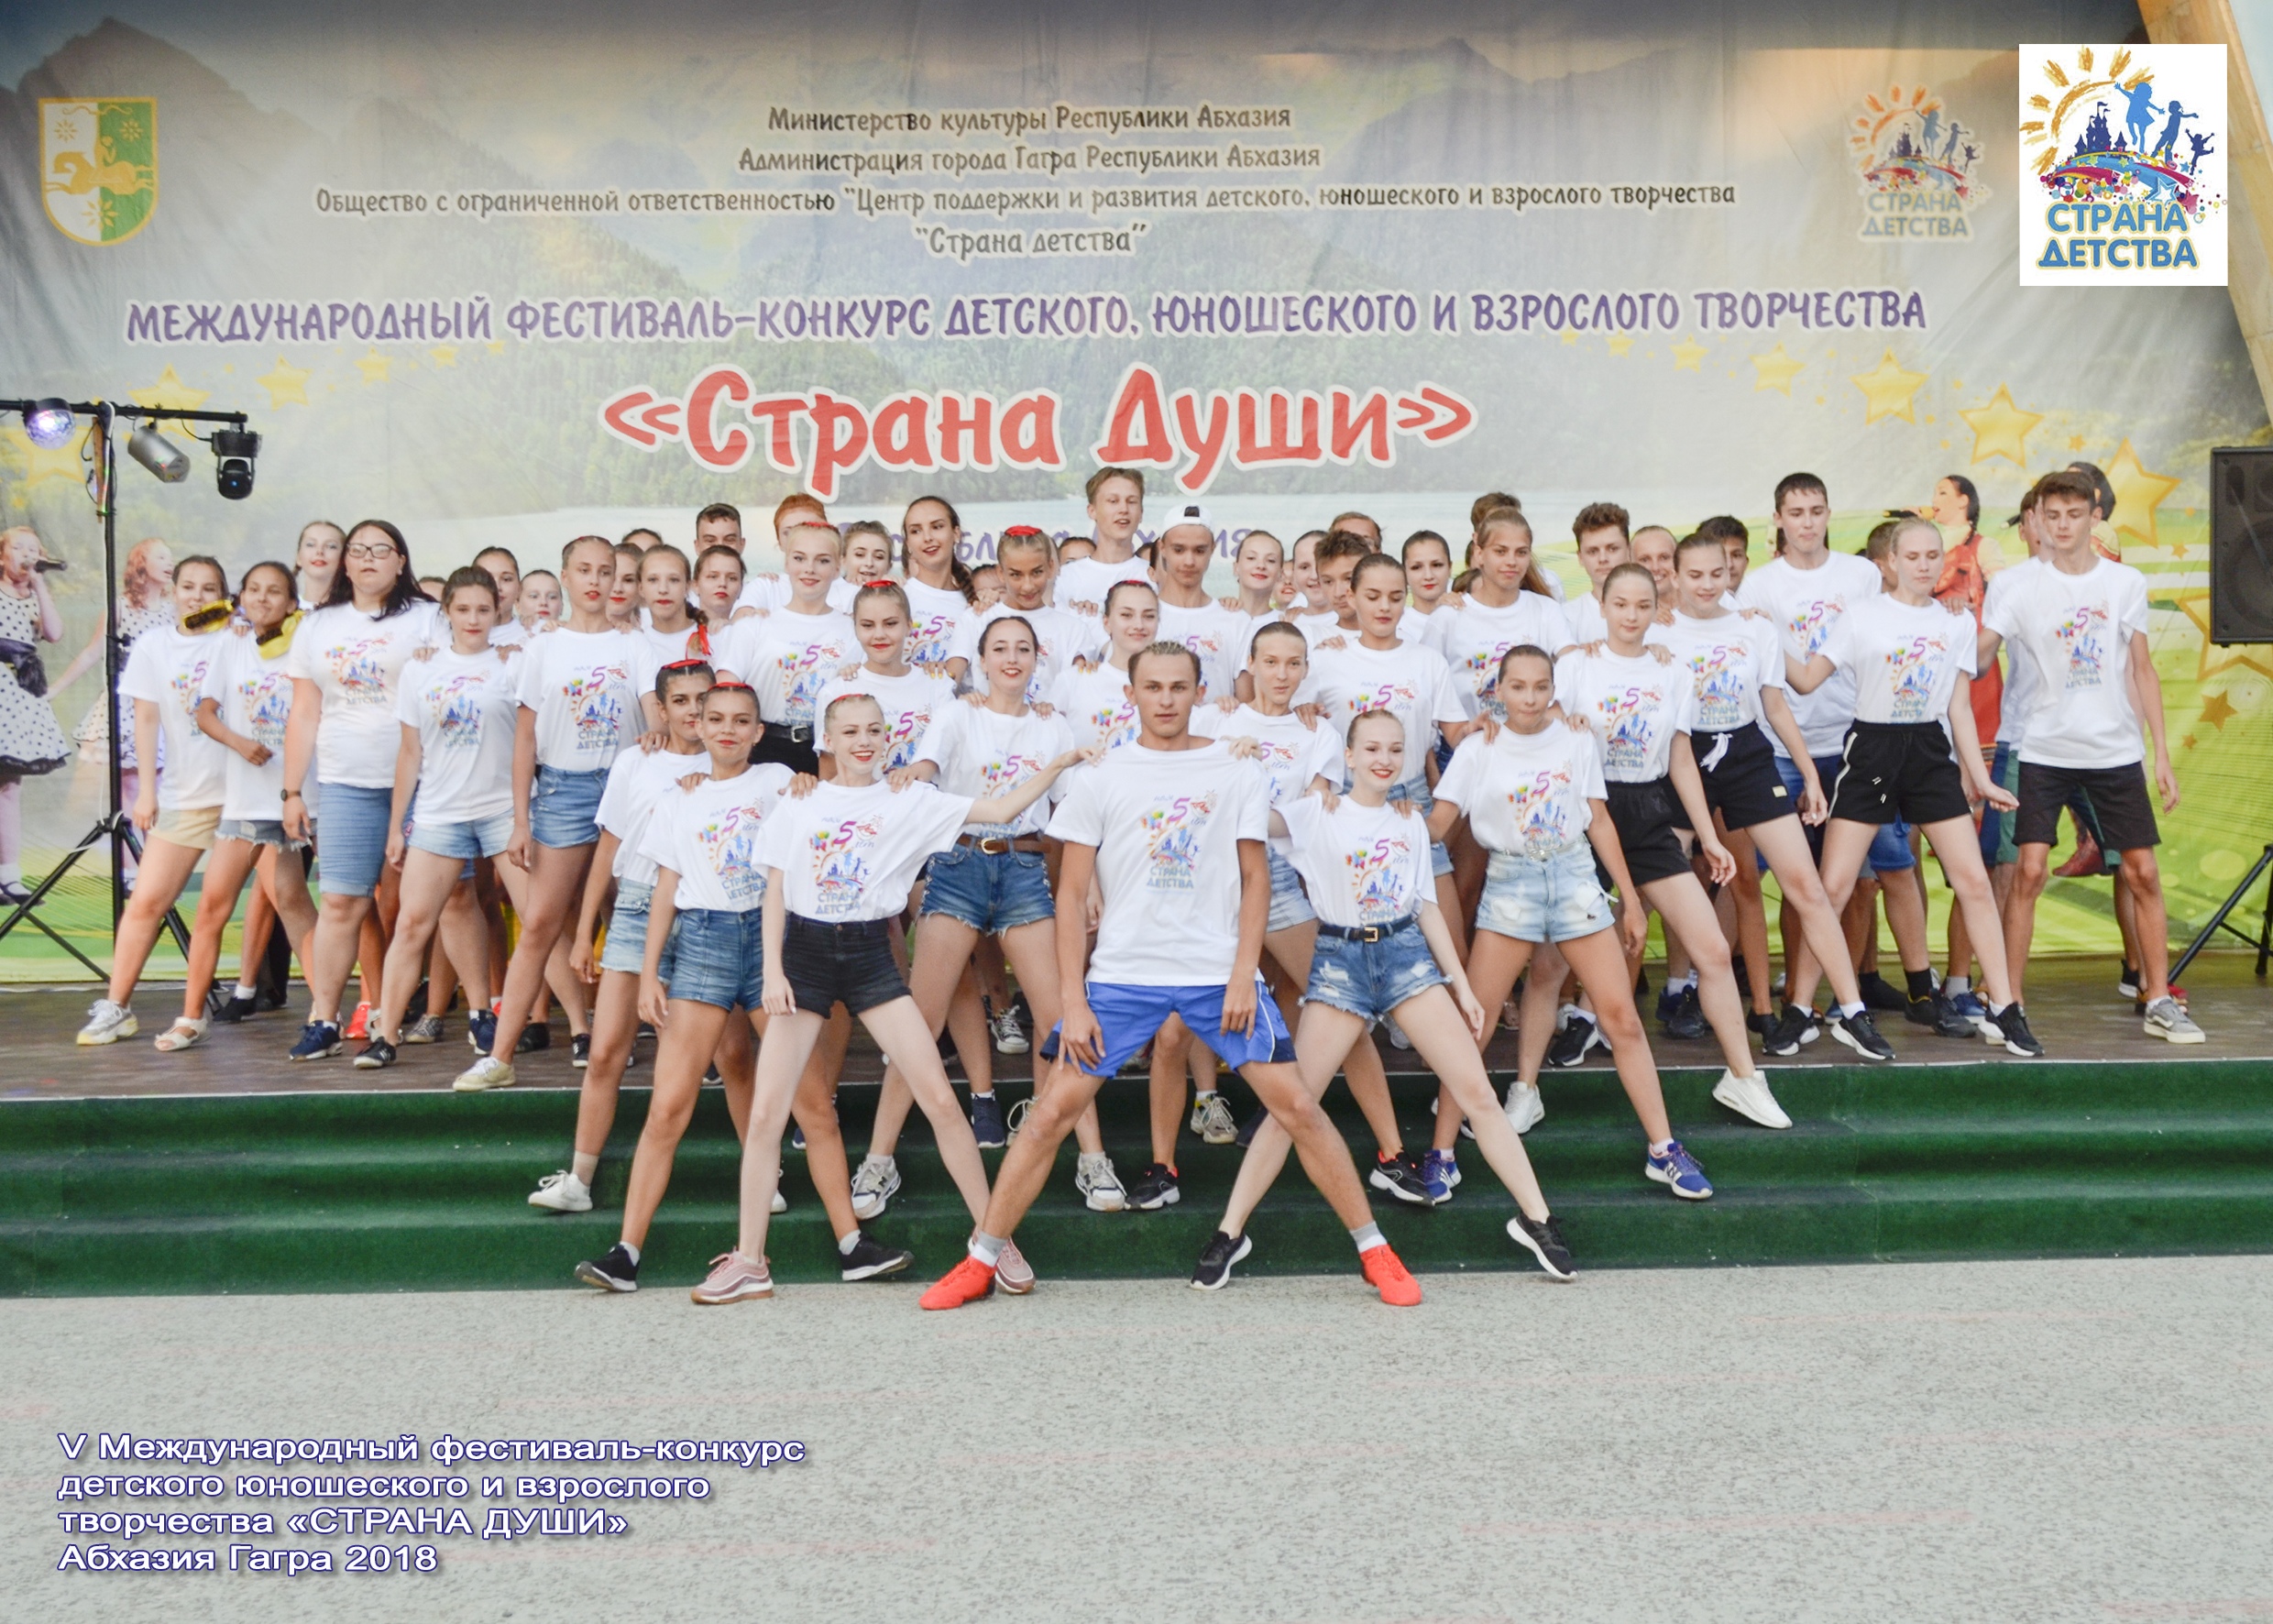 С 23 июля по 01 августа 2018г. прошёл шестой, последний этап V Юбилейного Международного фестиваля-конкурса детского, юношеского и взрослого творчества «Страна души», который проводится в г.Гагра Республики Абхазия. 